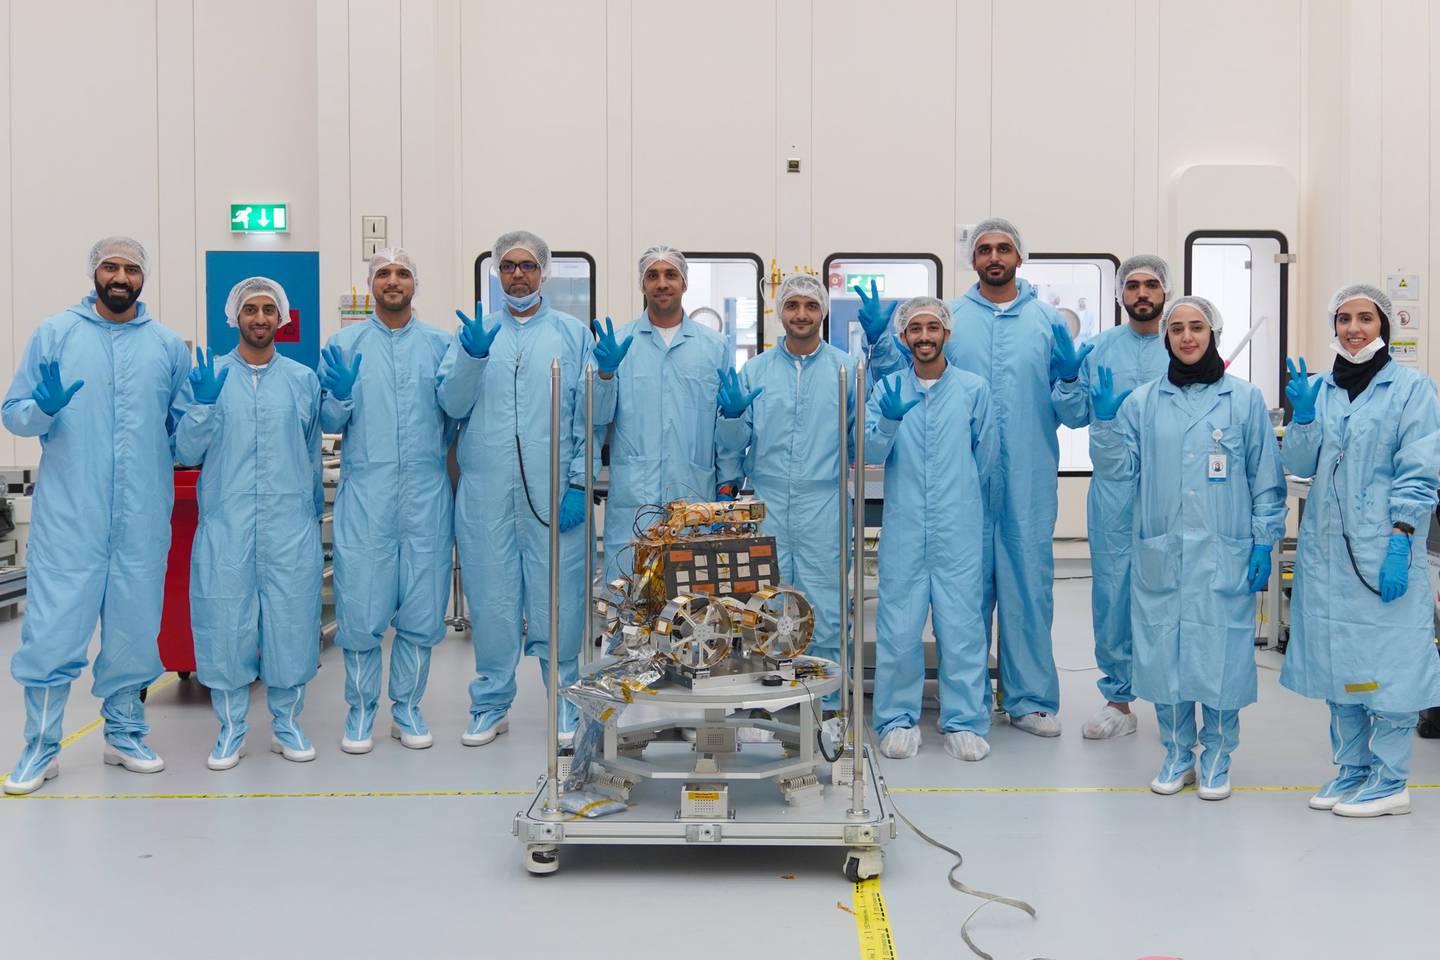 Ein kleines Team emiratischer Ingenieure hat die Mondmission der VAE entwickelt.  Hier sind sie zusammen mit dem Rashid-Rover im Reinraum im Mohammed bin Rashid Space Center am 15. Juni 2022 abgebildet. Foto: MBRSC